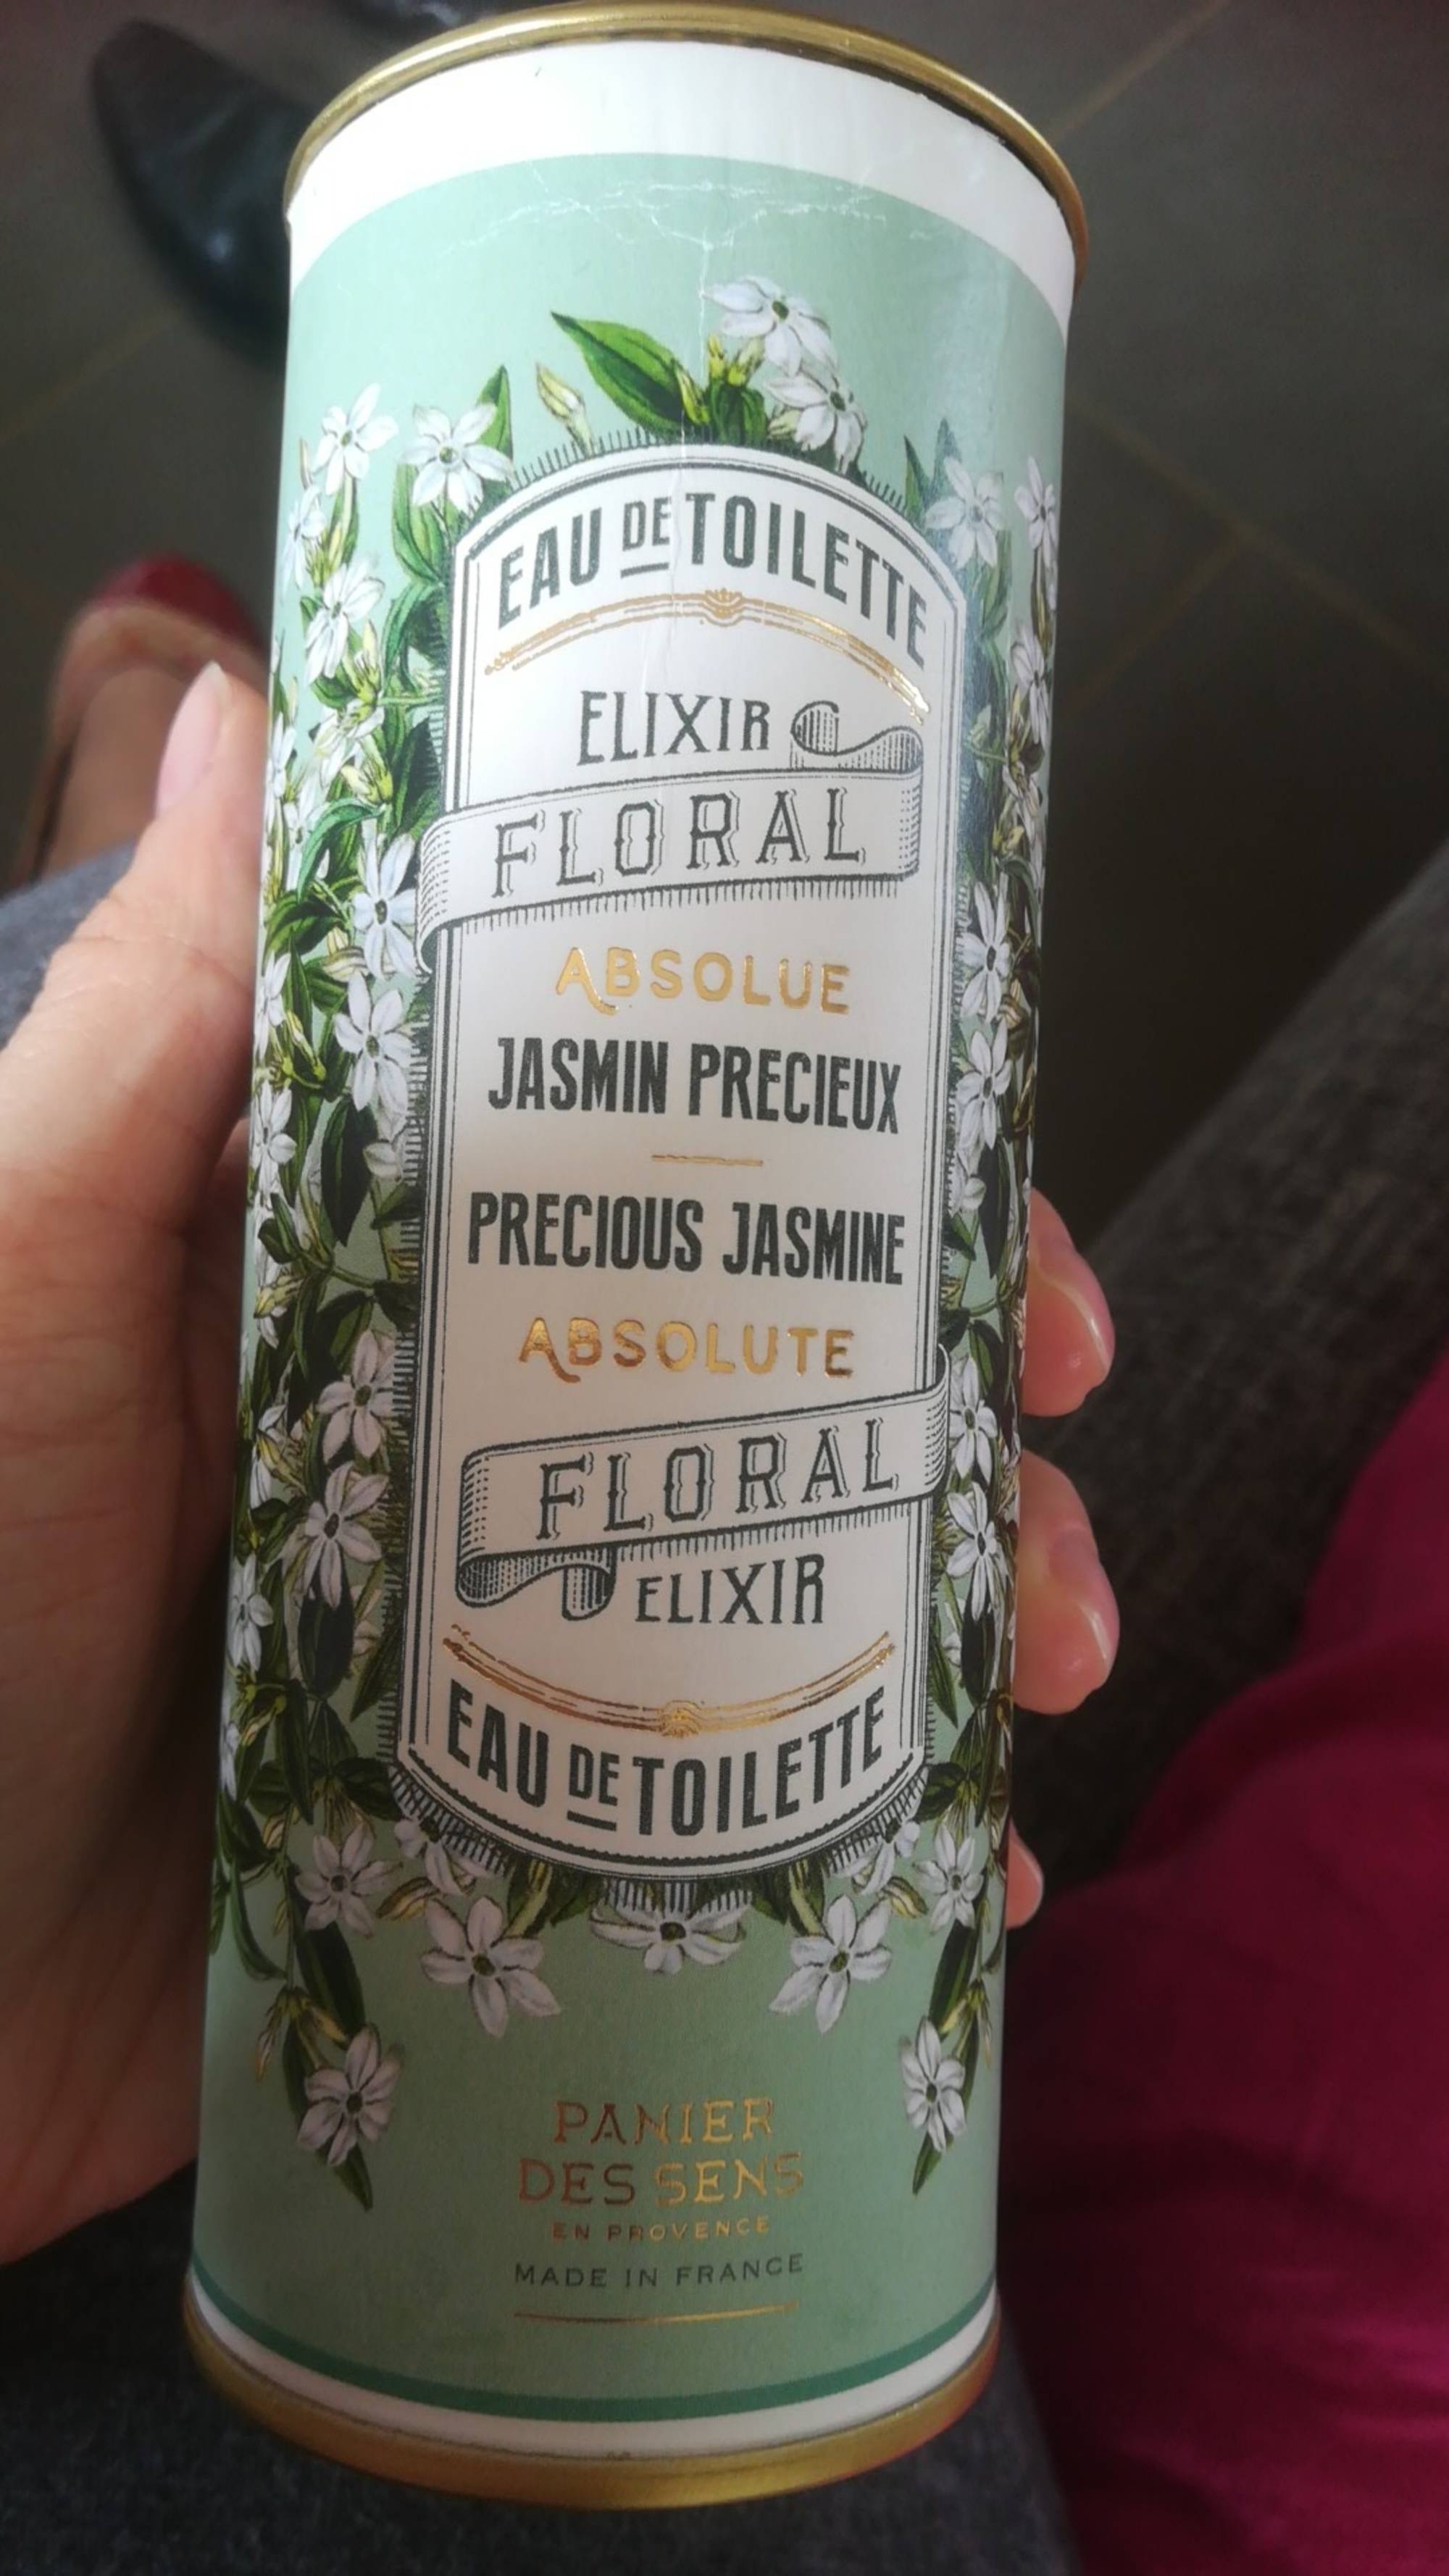 PANIER DES SENS - Absolue Jasmin précieux Elixir floral - Eau de toilette